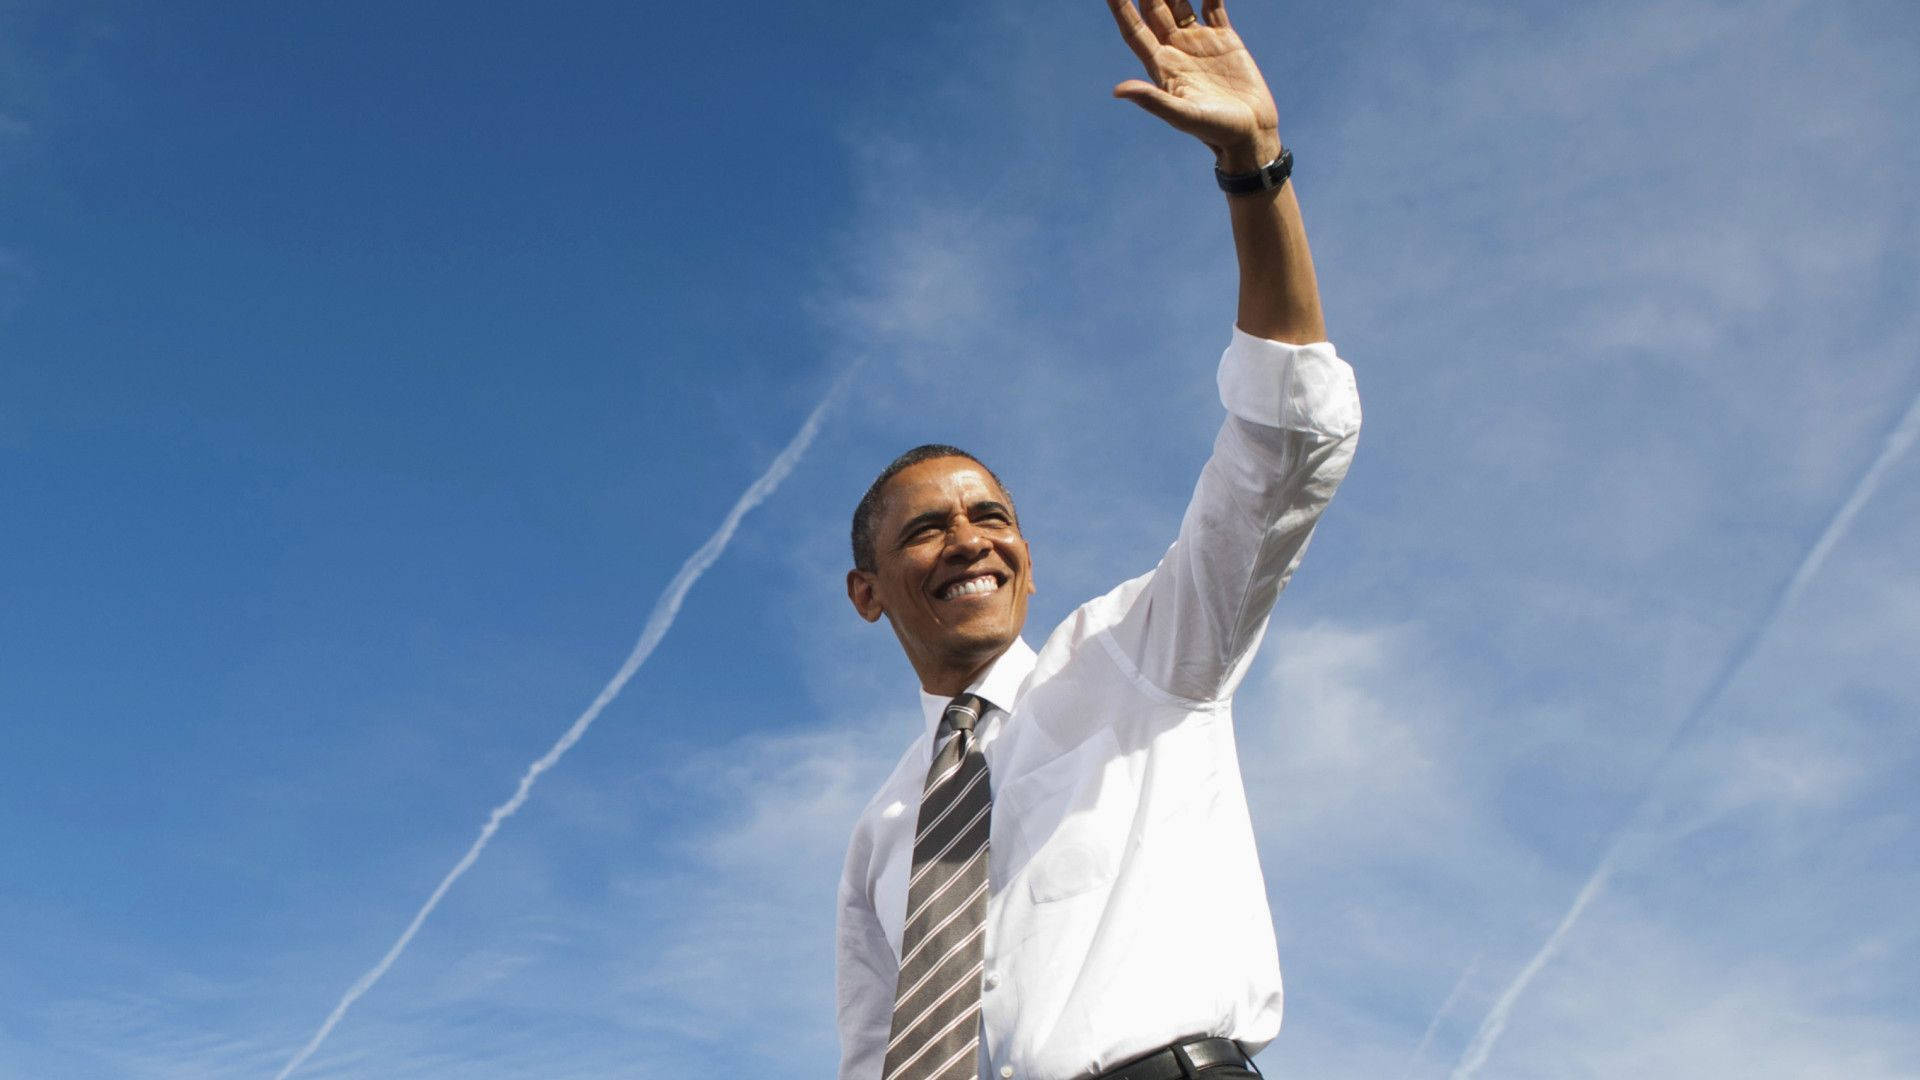 Barack Obama Under The Blue Sky Background